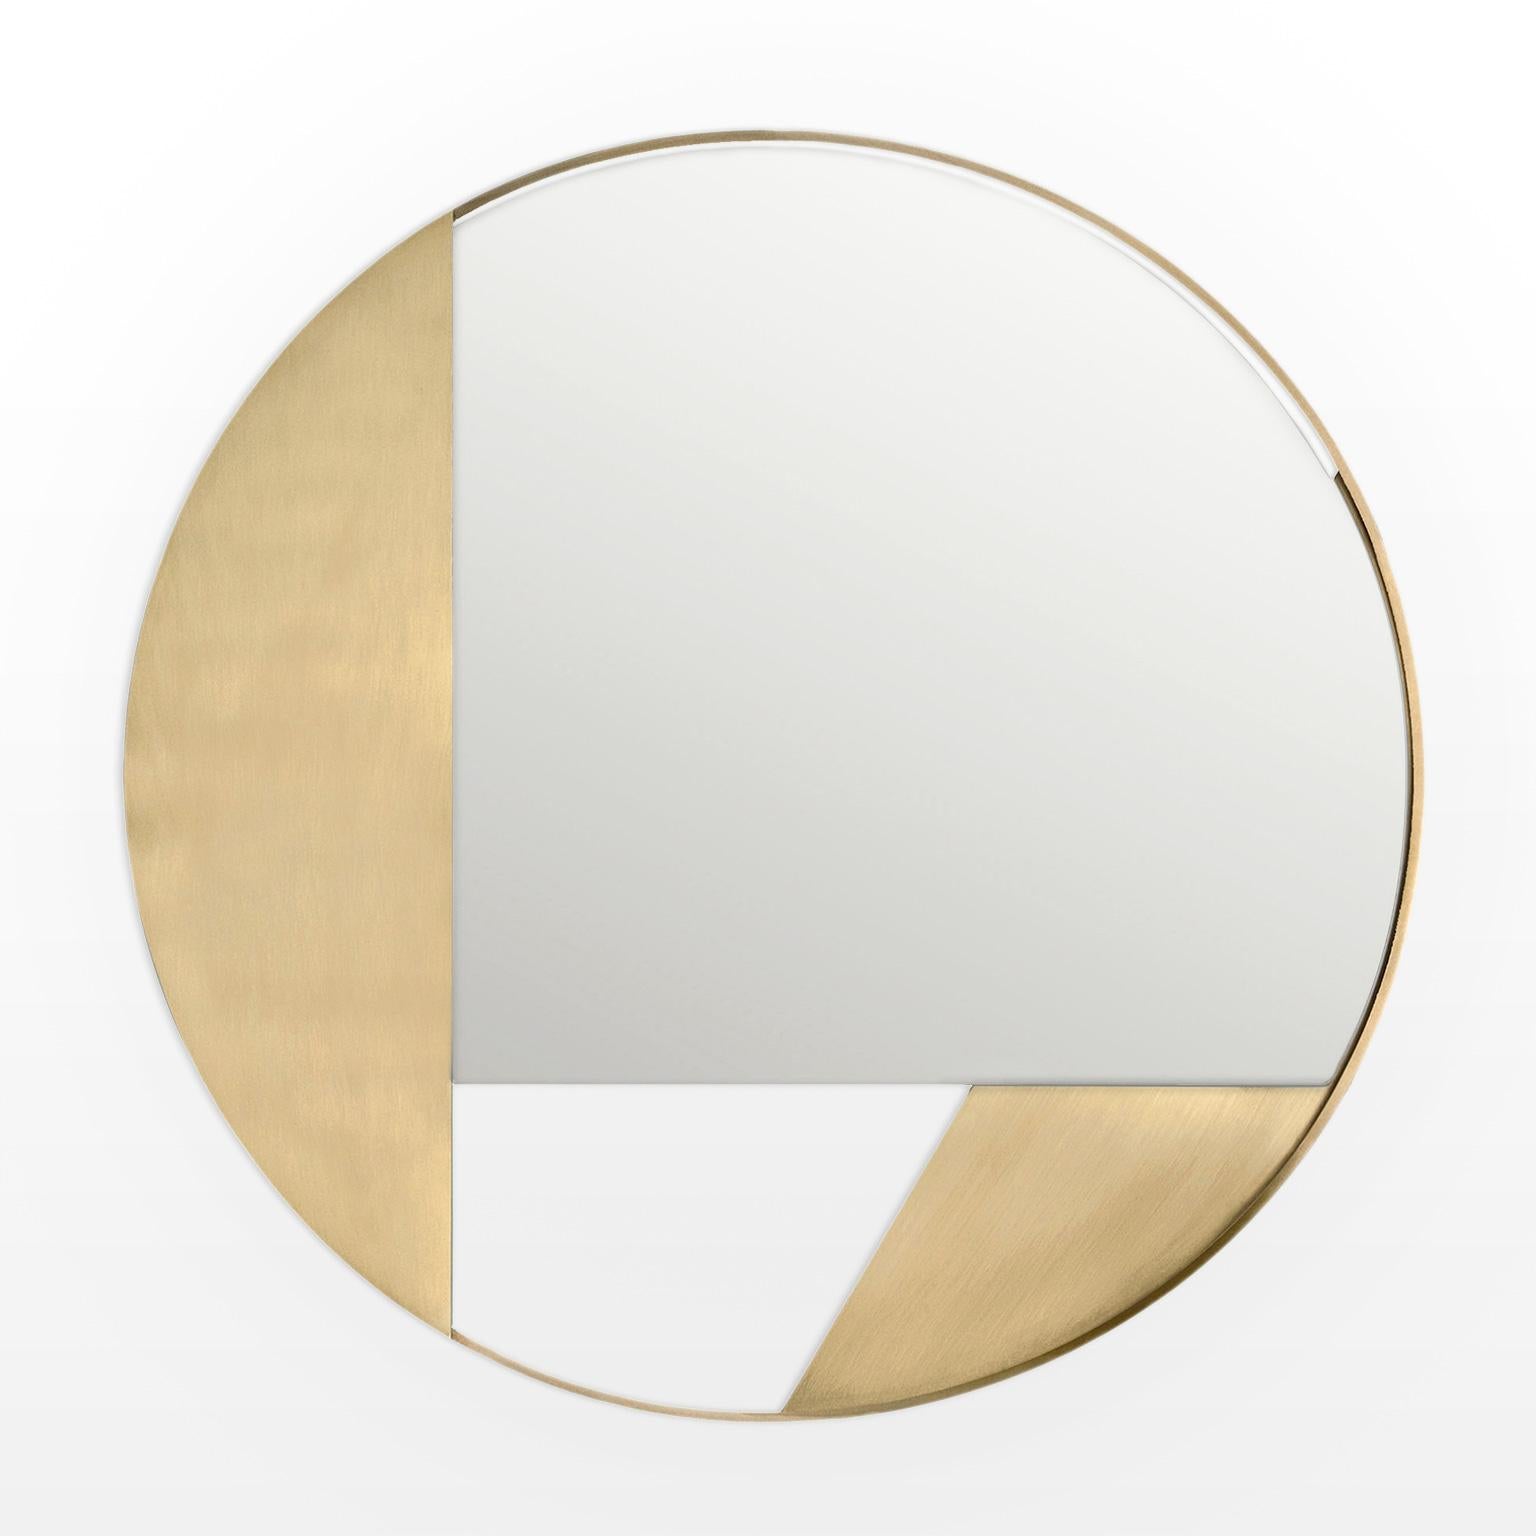 Revolution V3 ist ein Spiegel des 21. Jahrhunderts mit einem Durchmesser von 90 cm, der von italienischen Kunsthandwerkern in verschiedenen Farbtönen und Farben hergestellt wird. Das Werk wird in einer limitierten Auflage von 1000 signierten und